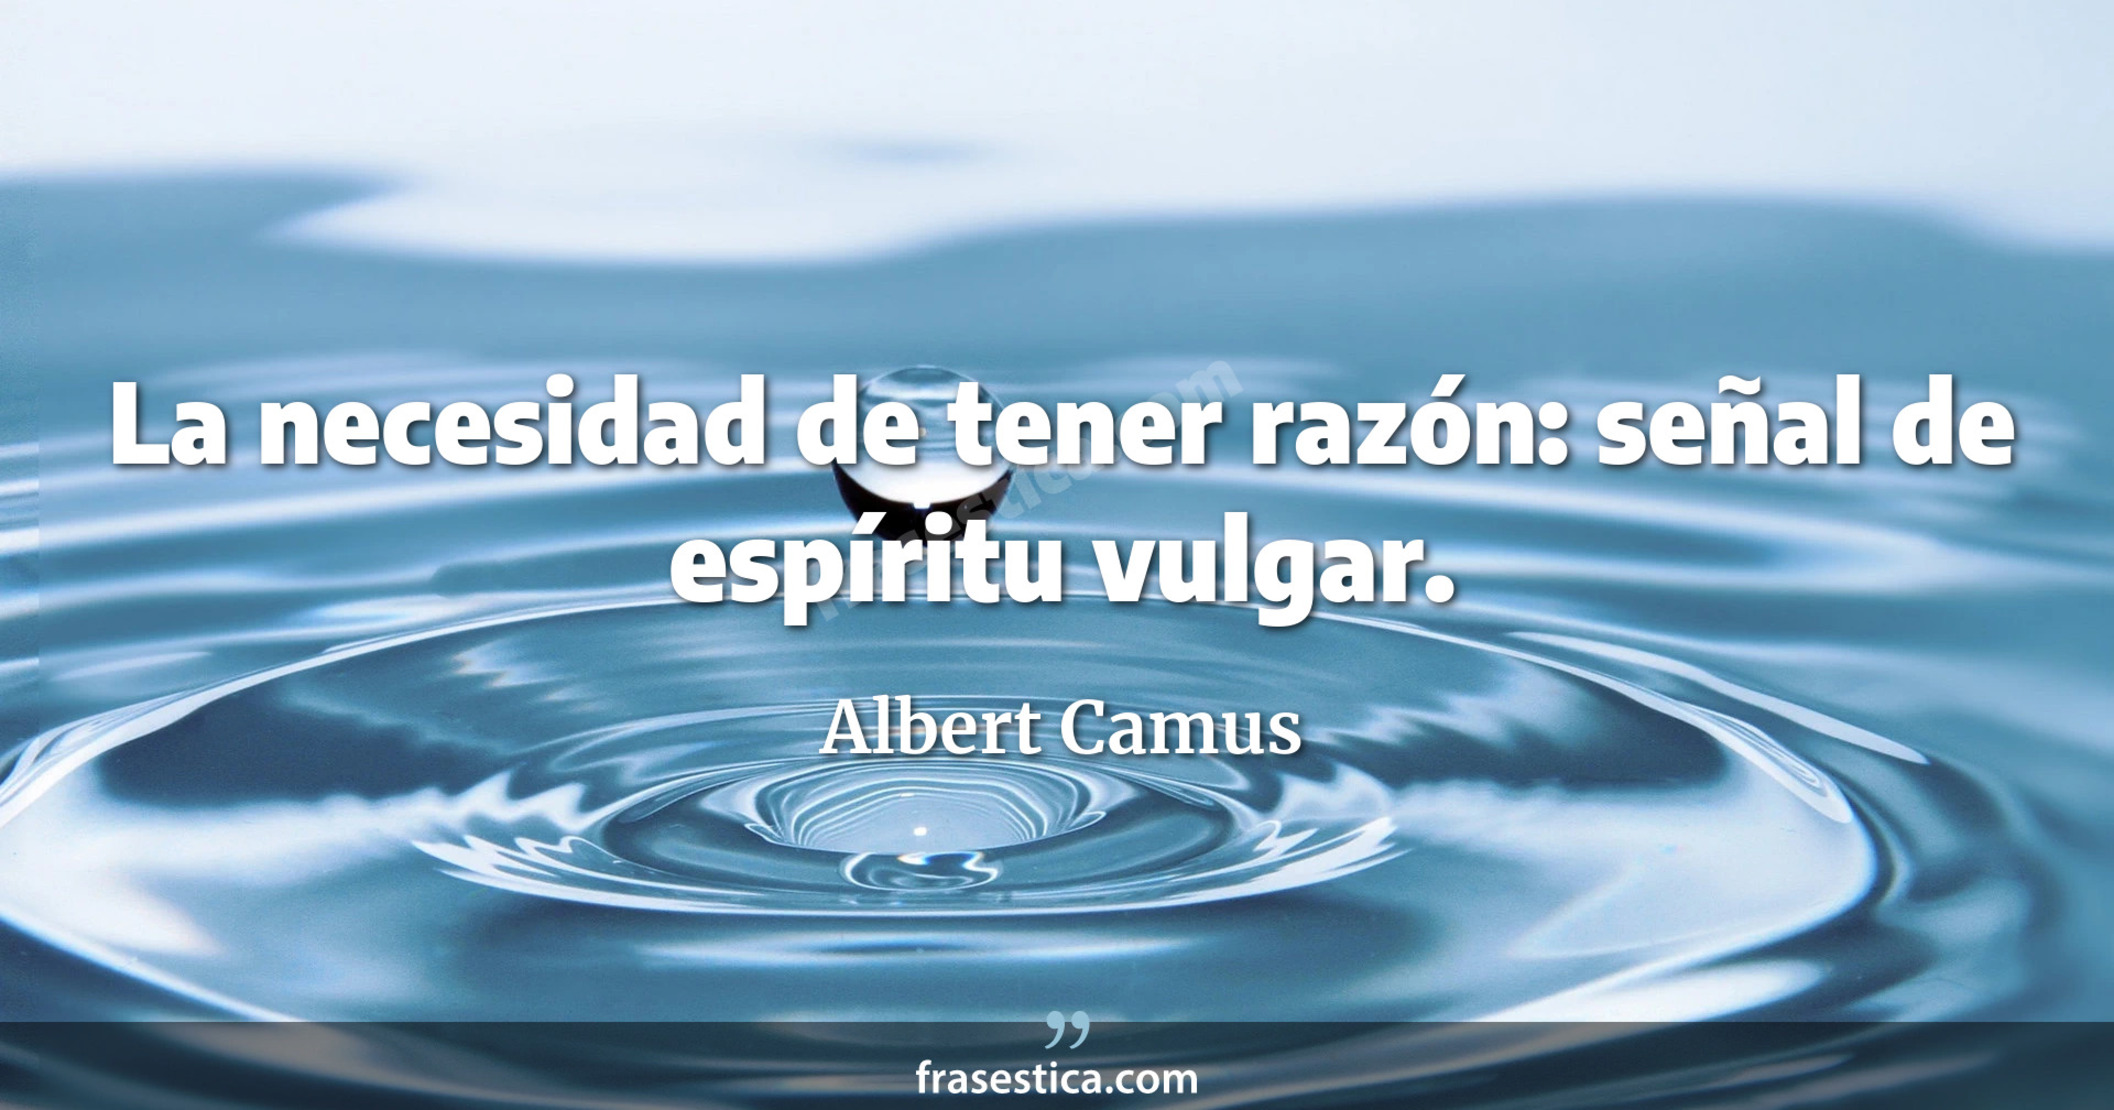 La necesidad de tener razón: señal de espíritu vulgar. - Albert Camus